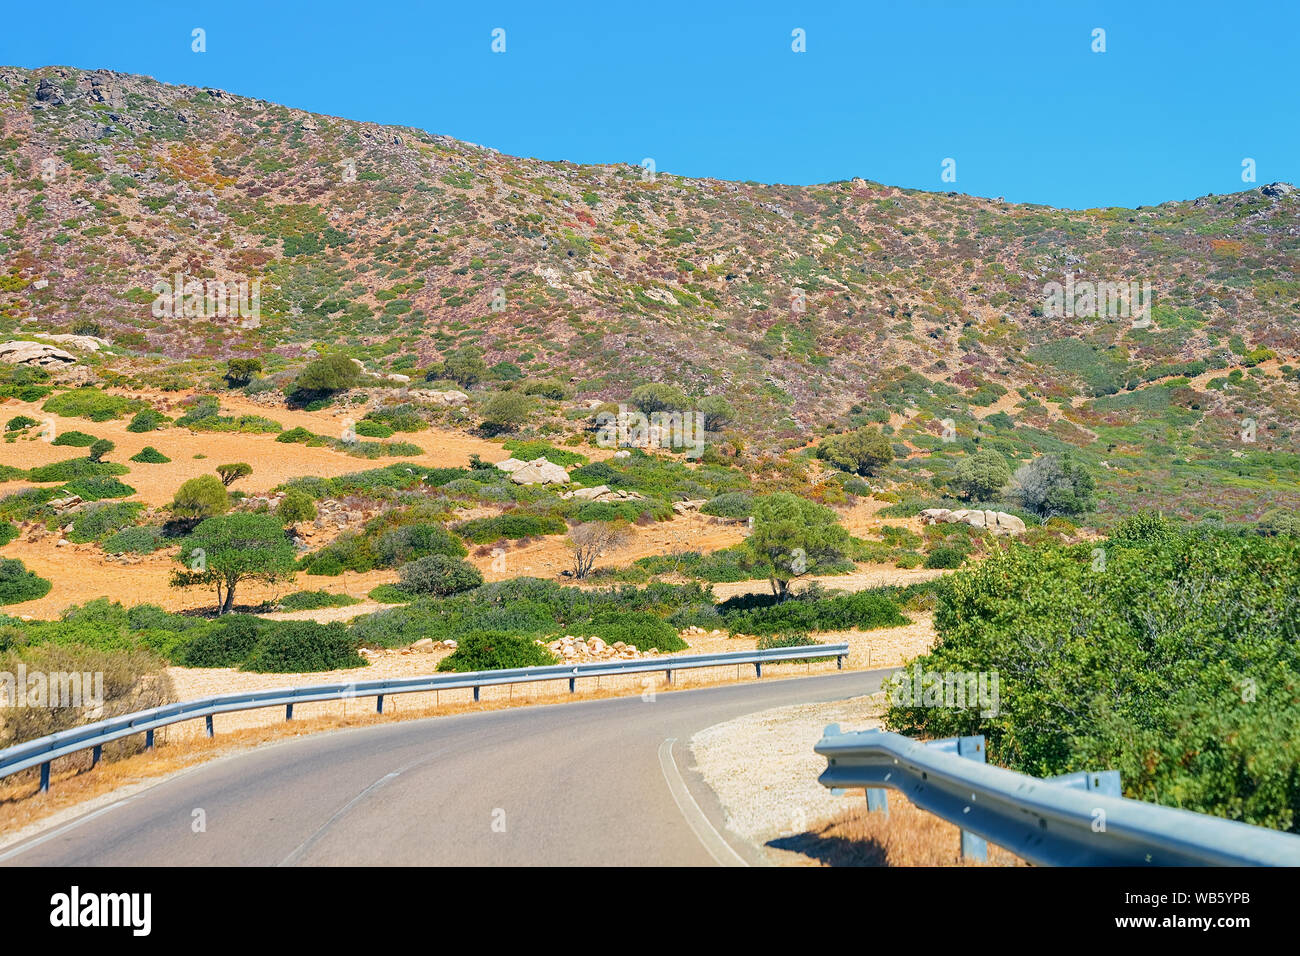 Paesaggio con paesaggio e la strada nel centro di Villasimius in provincia di Cagliari in Sardegna in Italia. Foto Stock